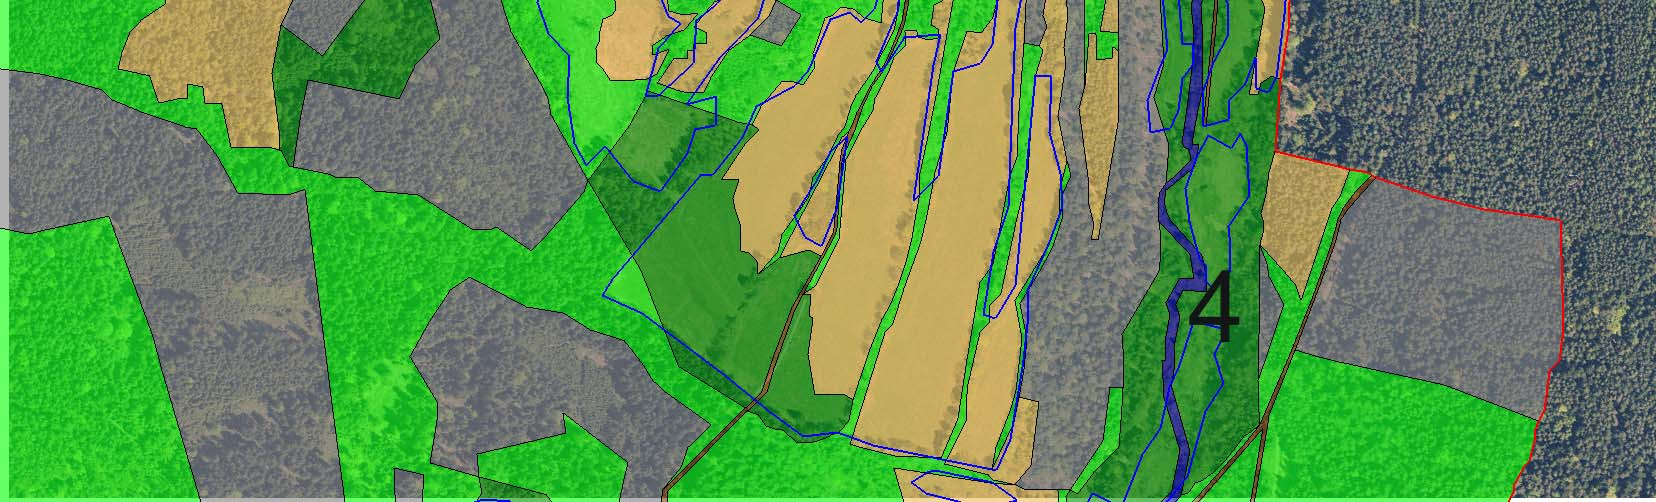 1 - původní lesní porosty; 2 - nově vzniklé lesní porosty na dřívější nelesní půdě (pastviny, tmavě zeleně jsou znázorněny též lesy na bývalých lukách); 3 - liniové porosty dřevin většinou sledují